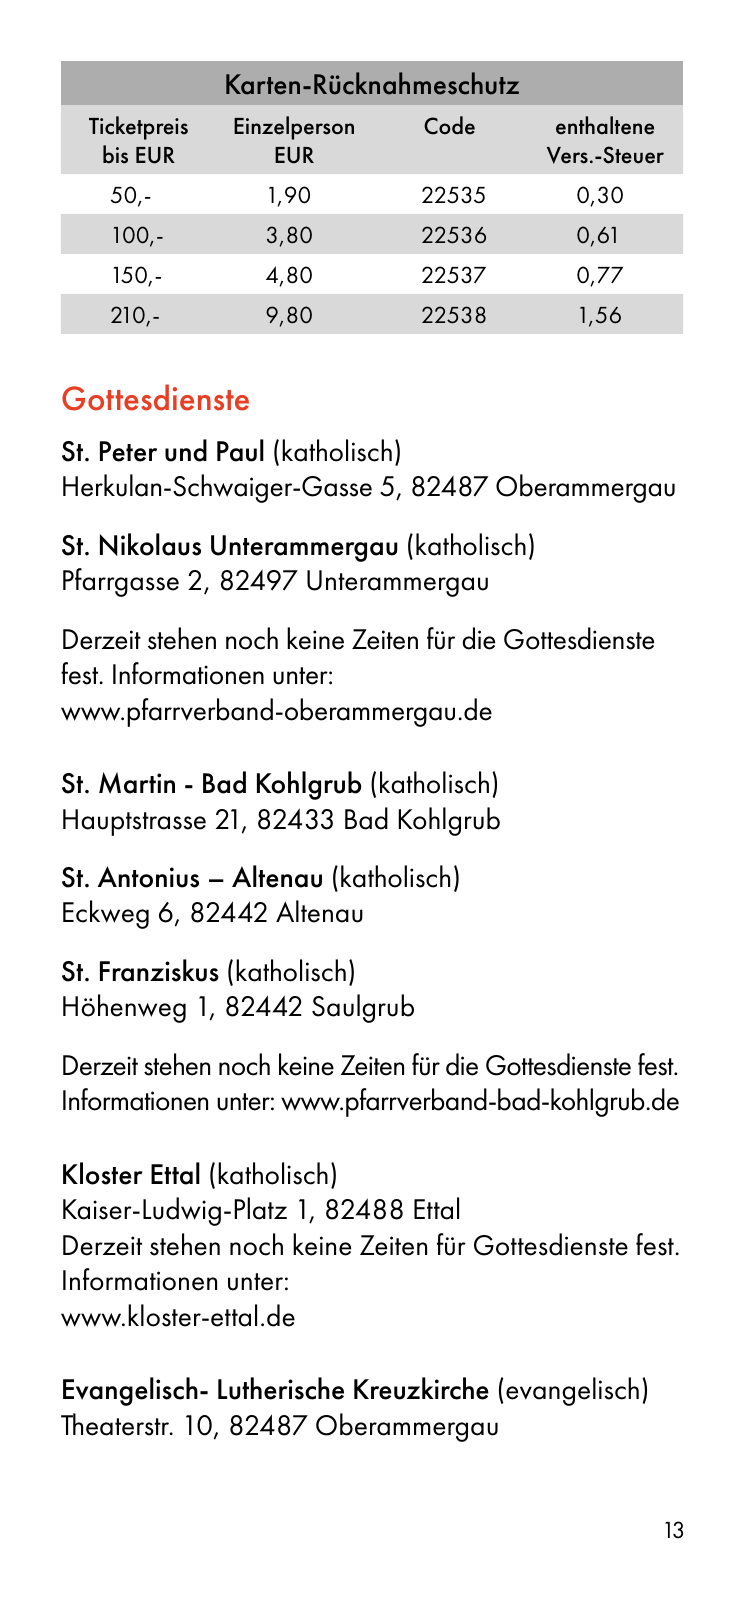 Vorschau Besucherinformation - Ticket only 24.08. Seite 13